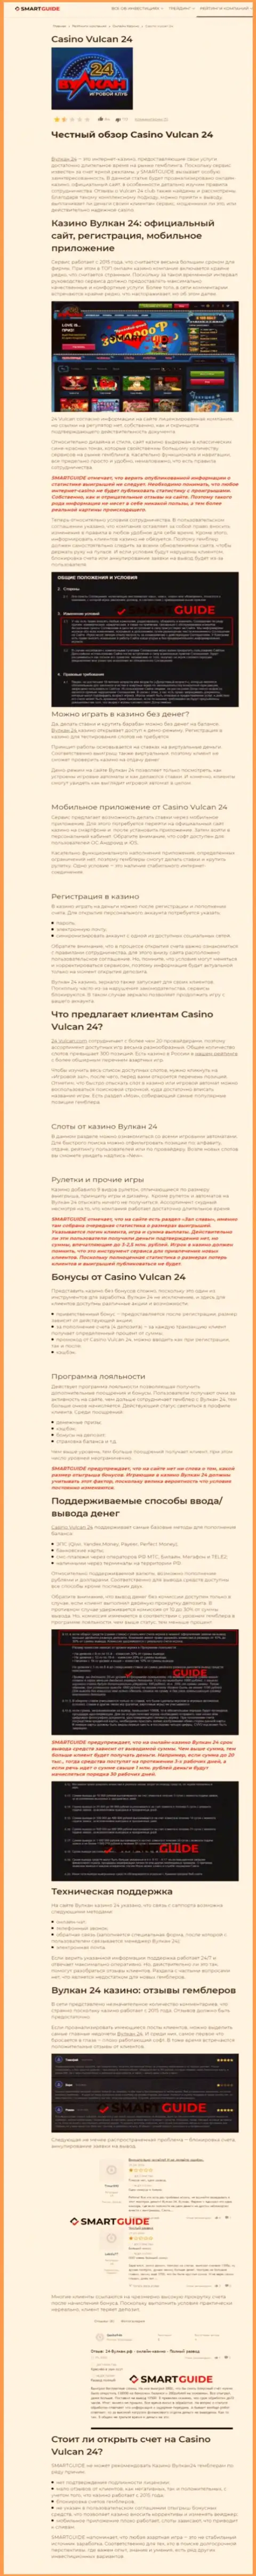 Wulkan24 - это организация, зарабатывающая на грабеже финансовых активов своих клиентов (обзор неправомерных деяний)